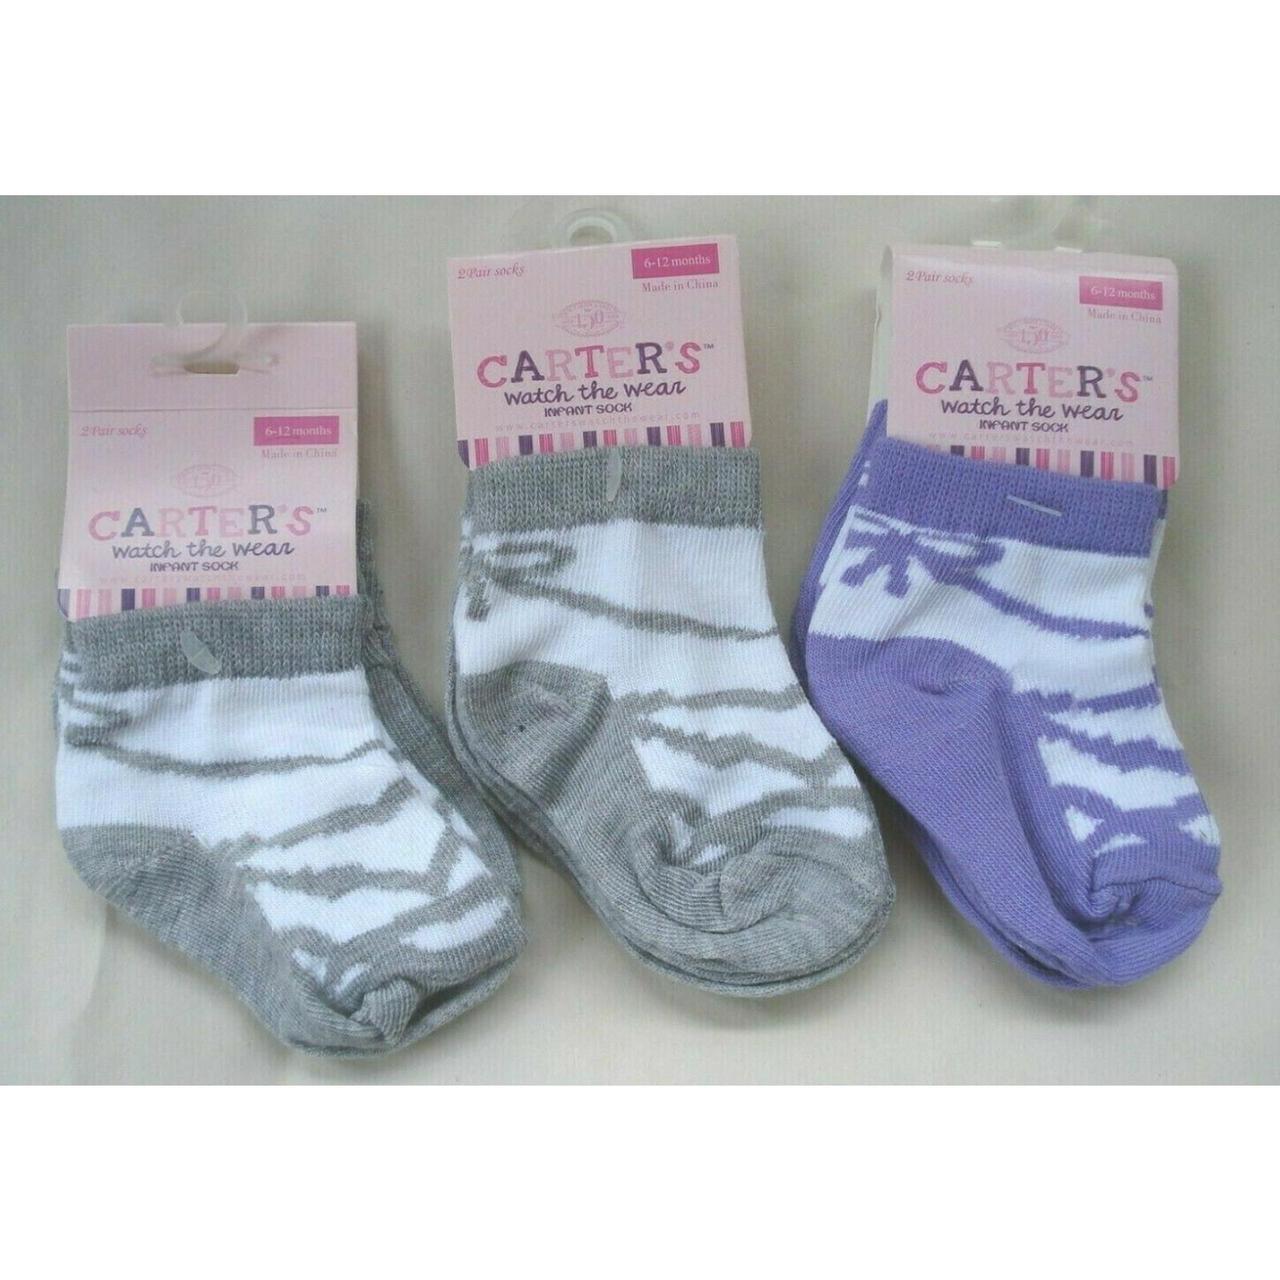 Carter's Men's Purple Socks | Depop